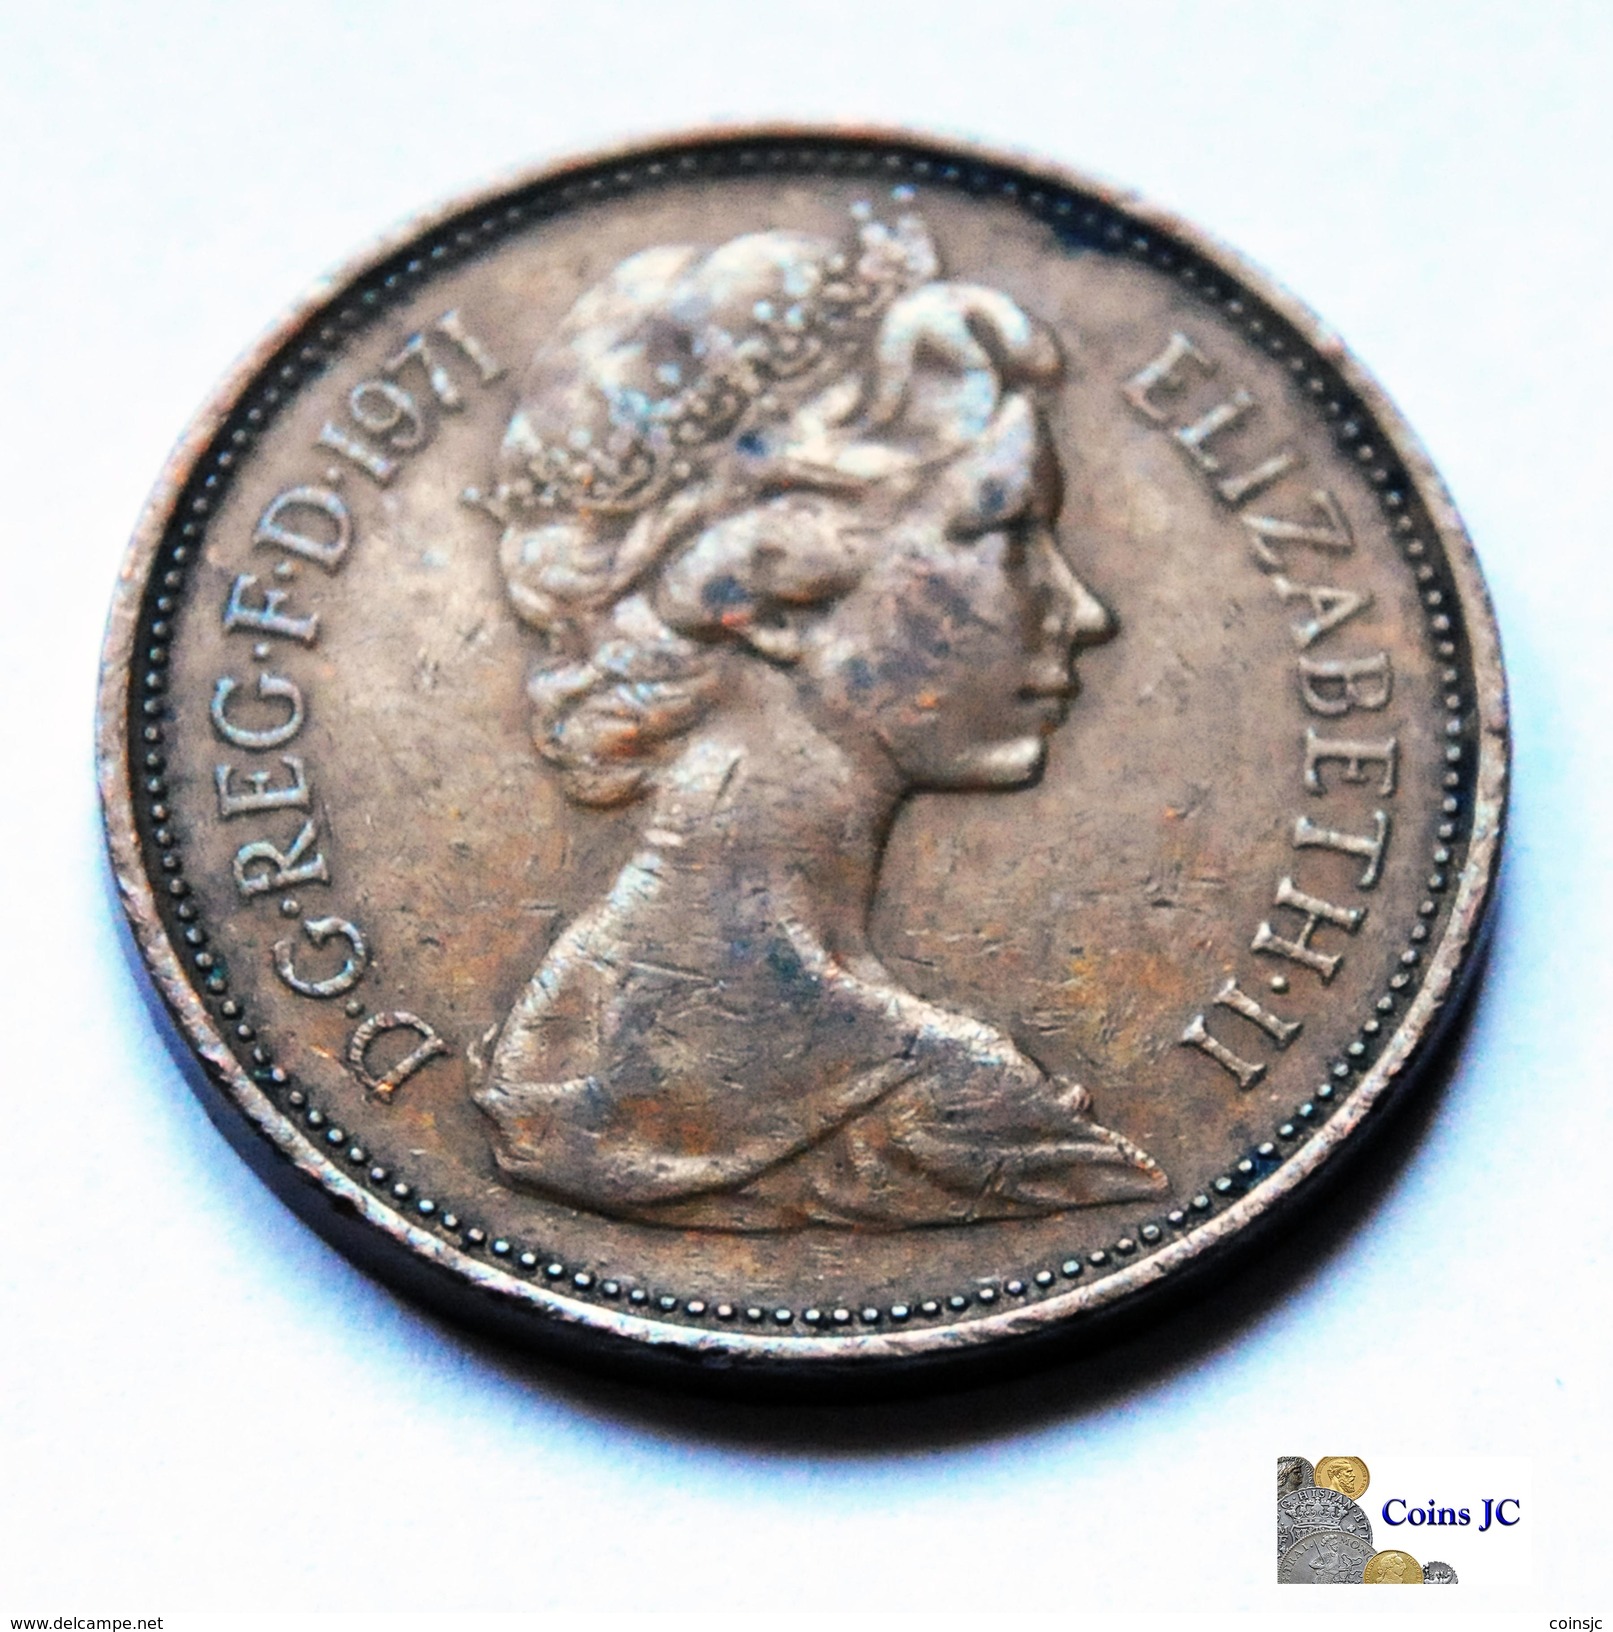 Gran Bretaña - 2 New Pence - 1971 - 2 Pence & 2 New Pence